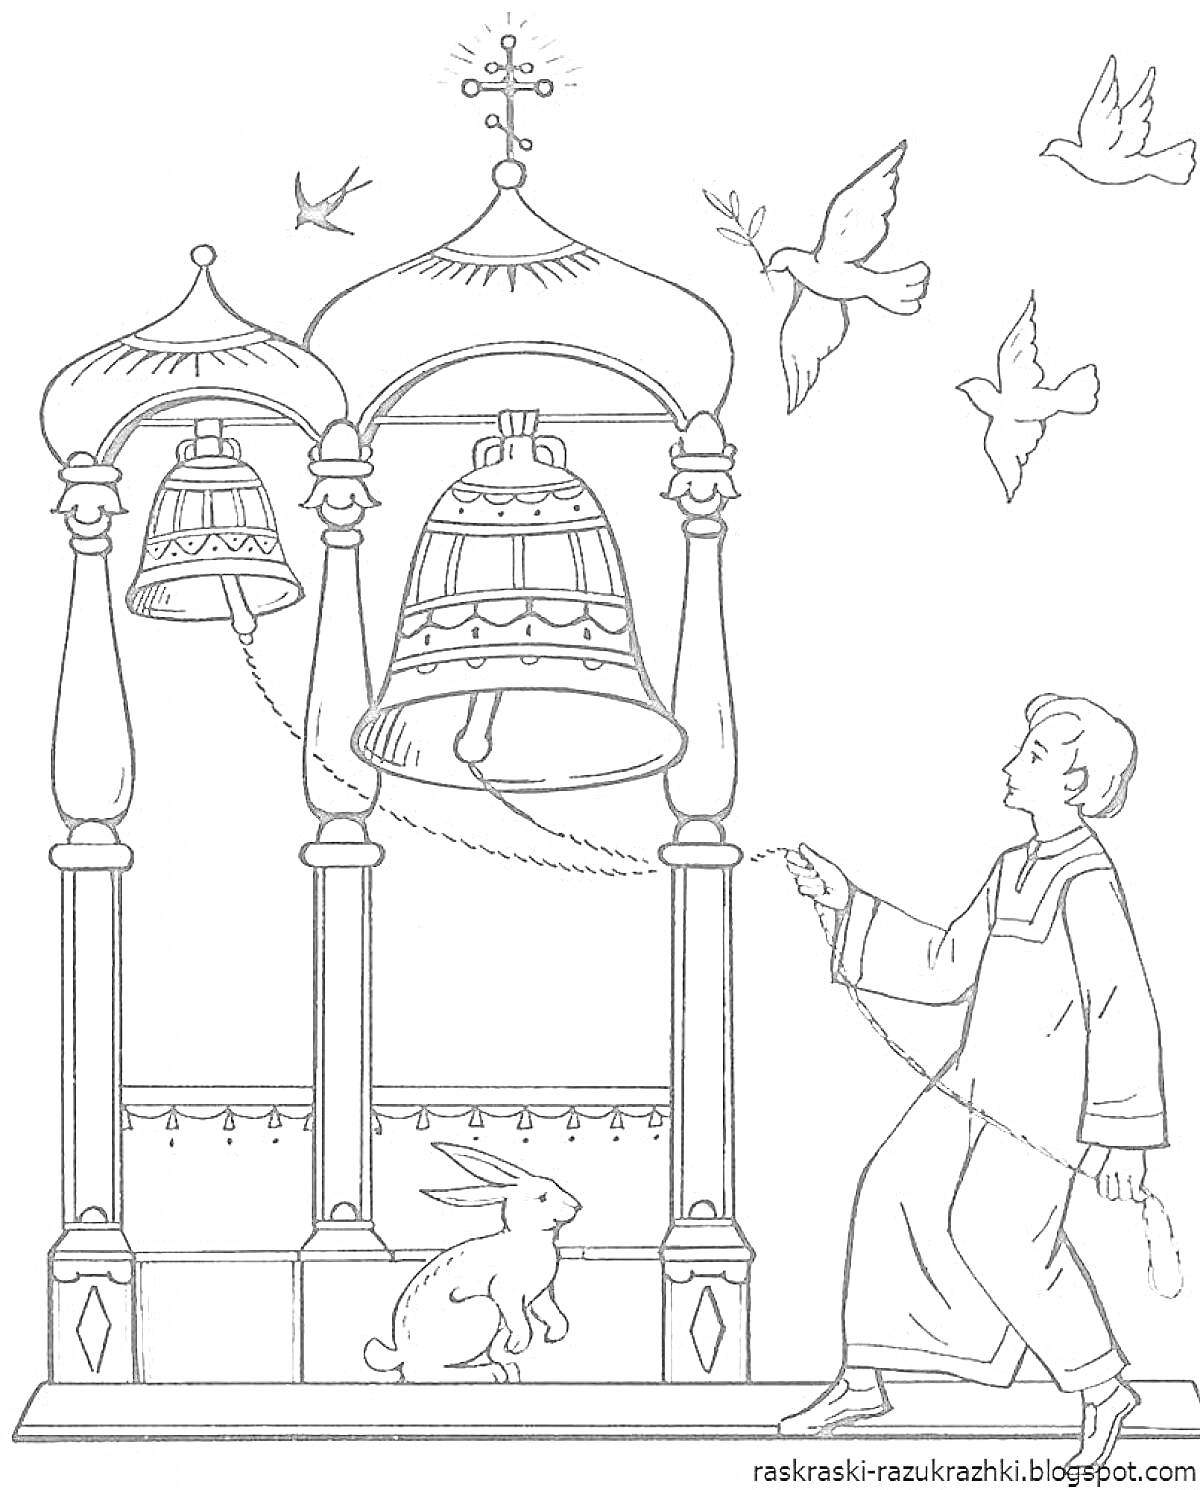 Колокольня с тремя куполами, висящими колоколами, человеком, звенящим колокол, птицами в полете и кроликом на земле